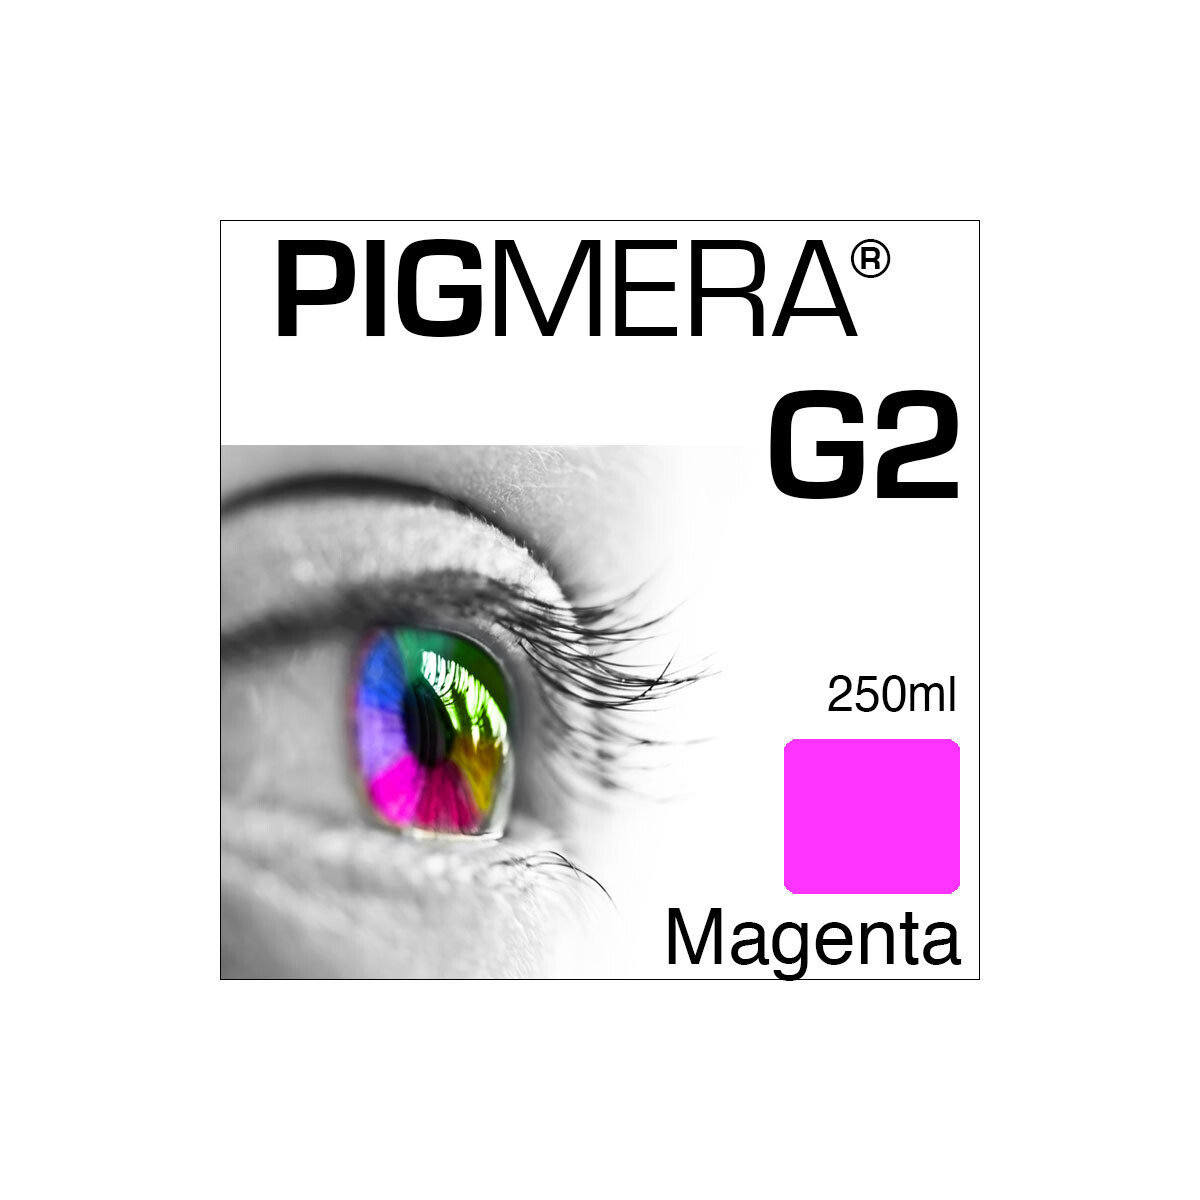 farbenwerk Pigmera G2 Bottle Magenta 250ml